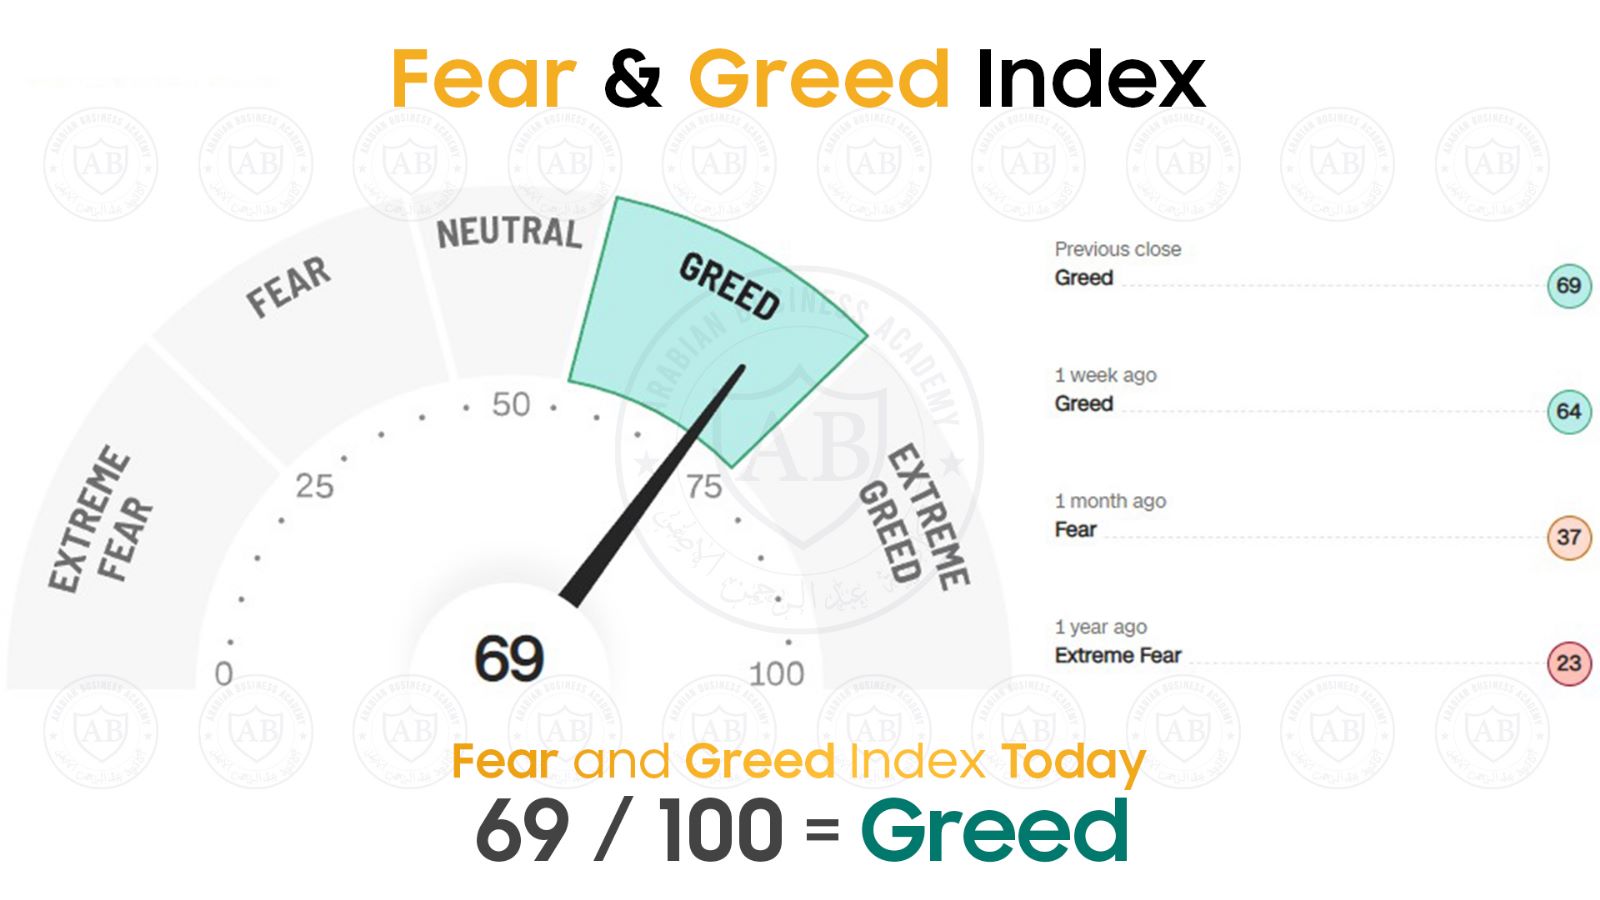 مؤشر  Fear and Greed  في أسواق الاسهم يشير  عمليات شراء   69/100  لهذا اليوم